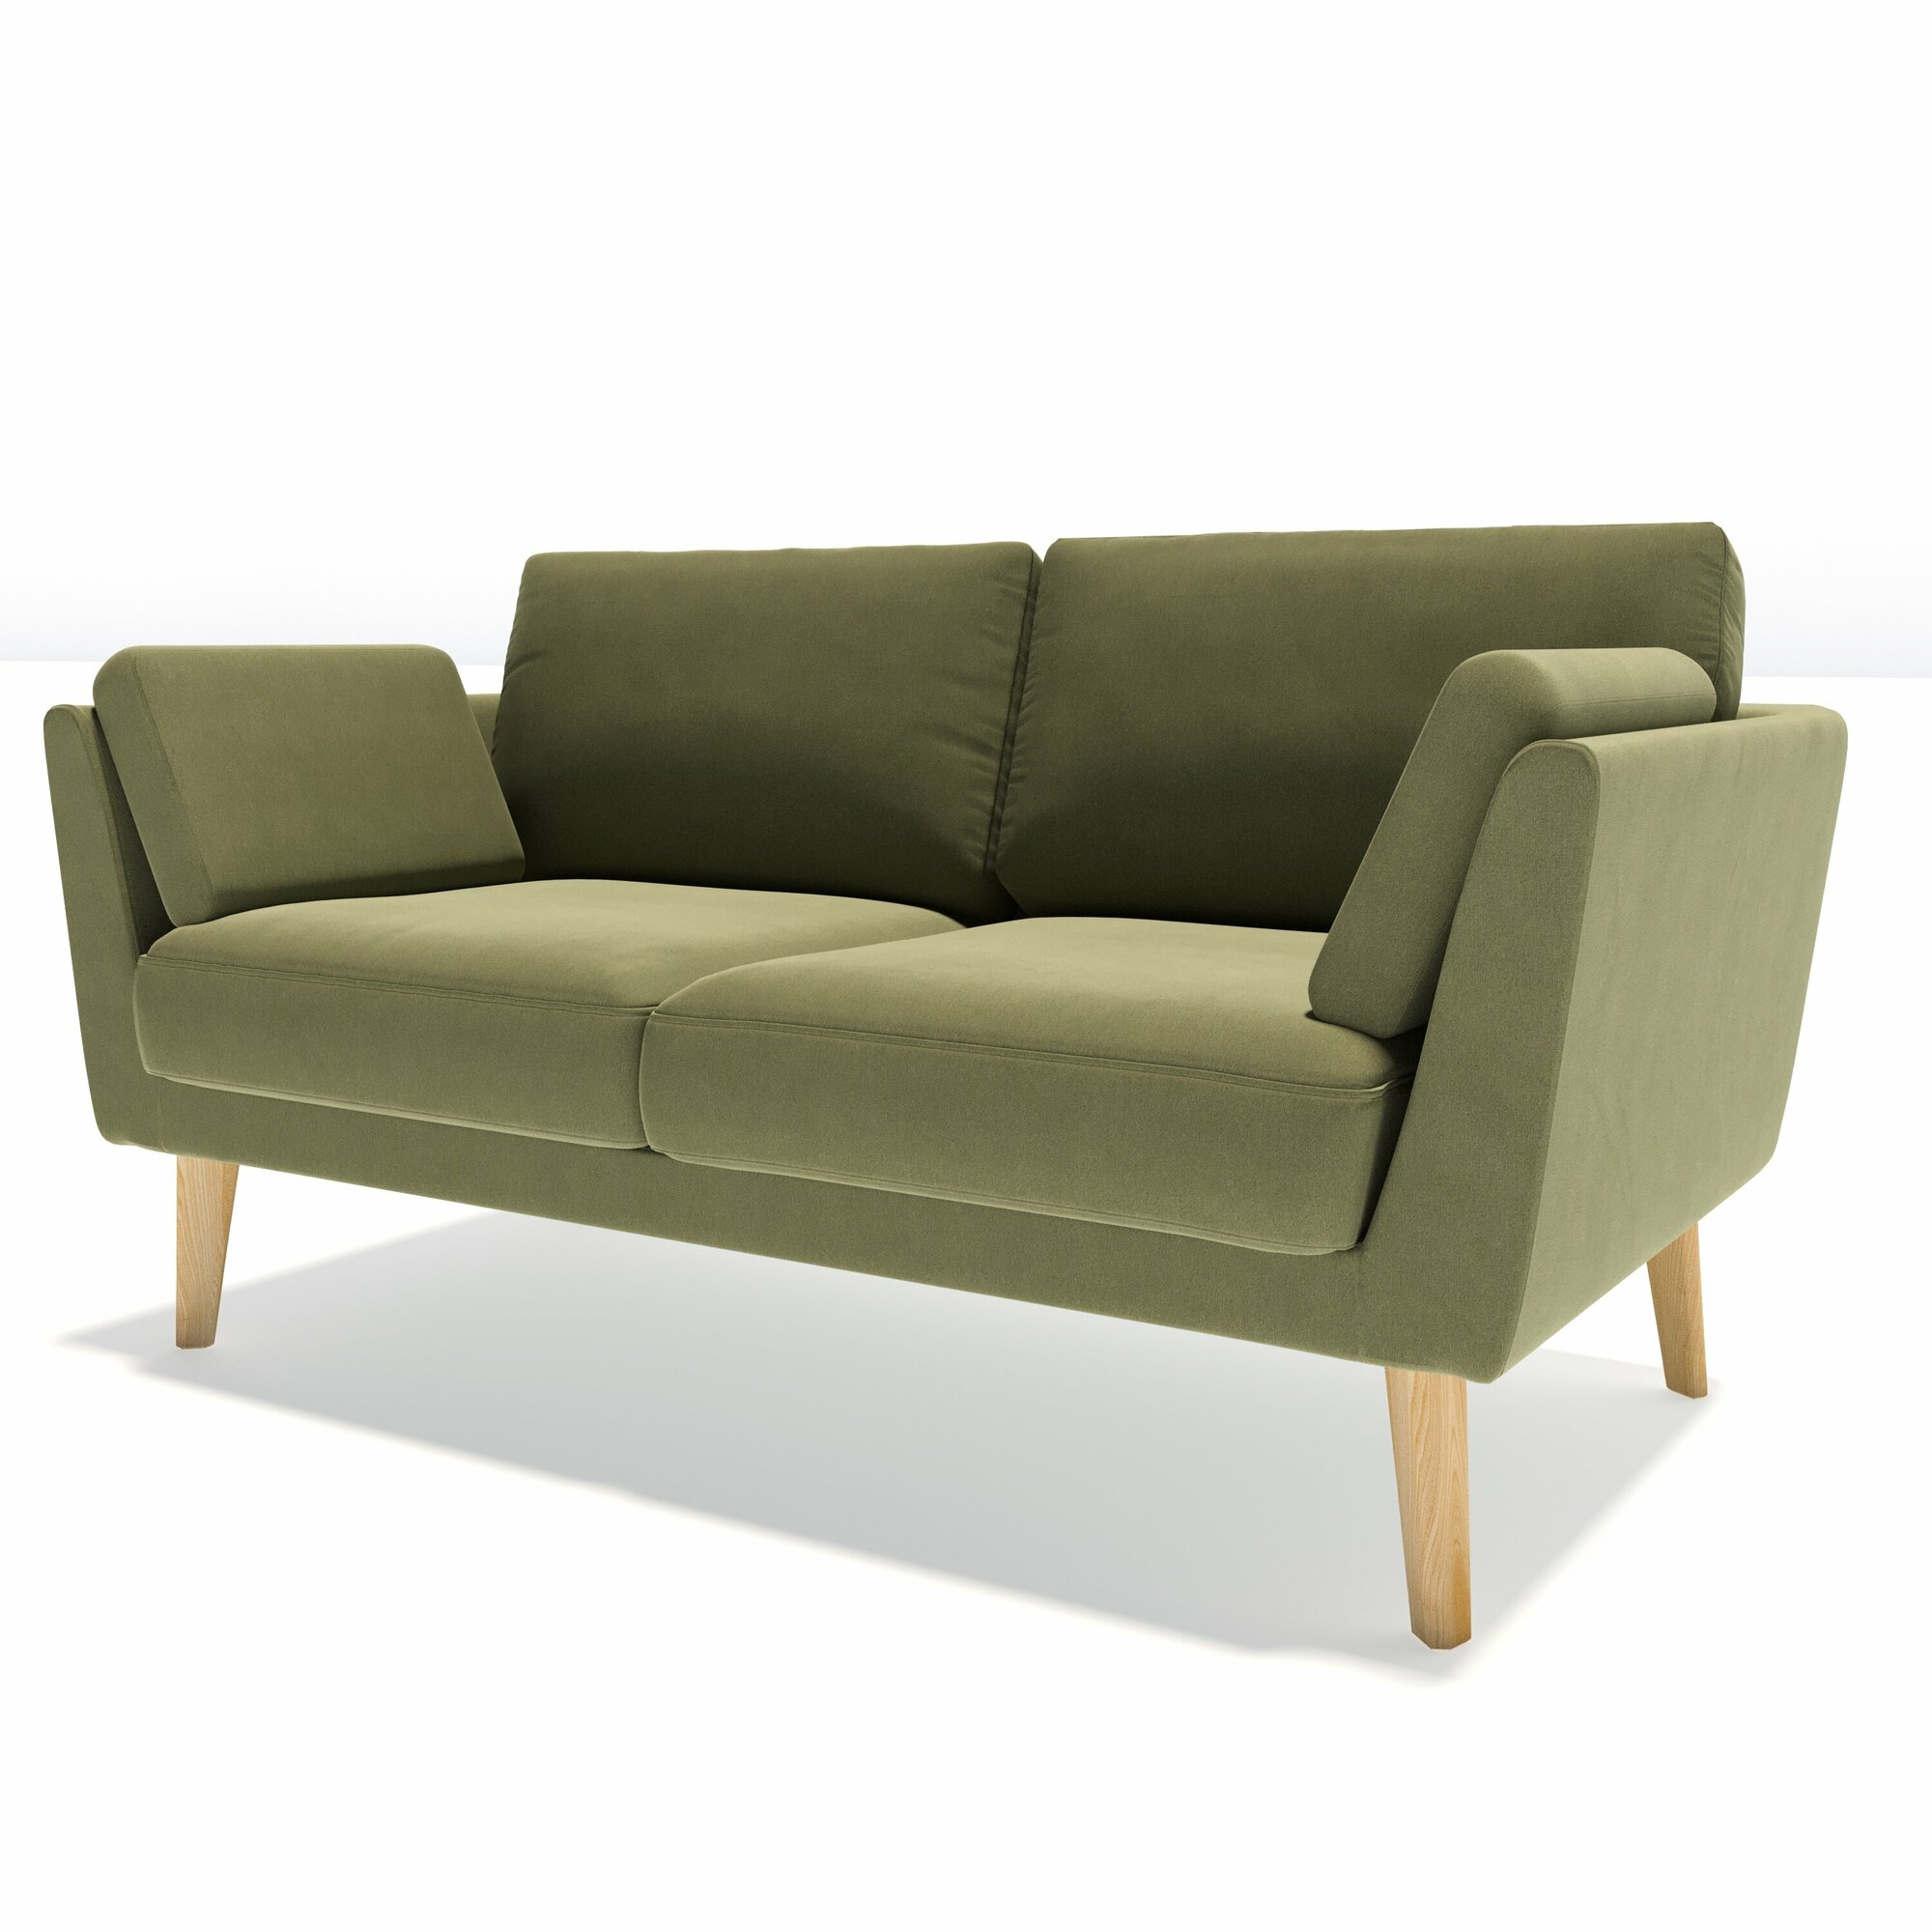 Мини диван Soft Element Минта, двухместный, велюр, зеленый, стиль скандинавский лофт, на кухню, в офис, на дачу, для кафе и ресторанов